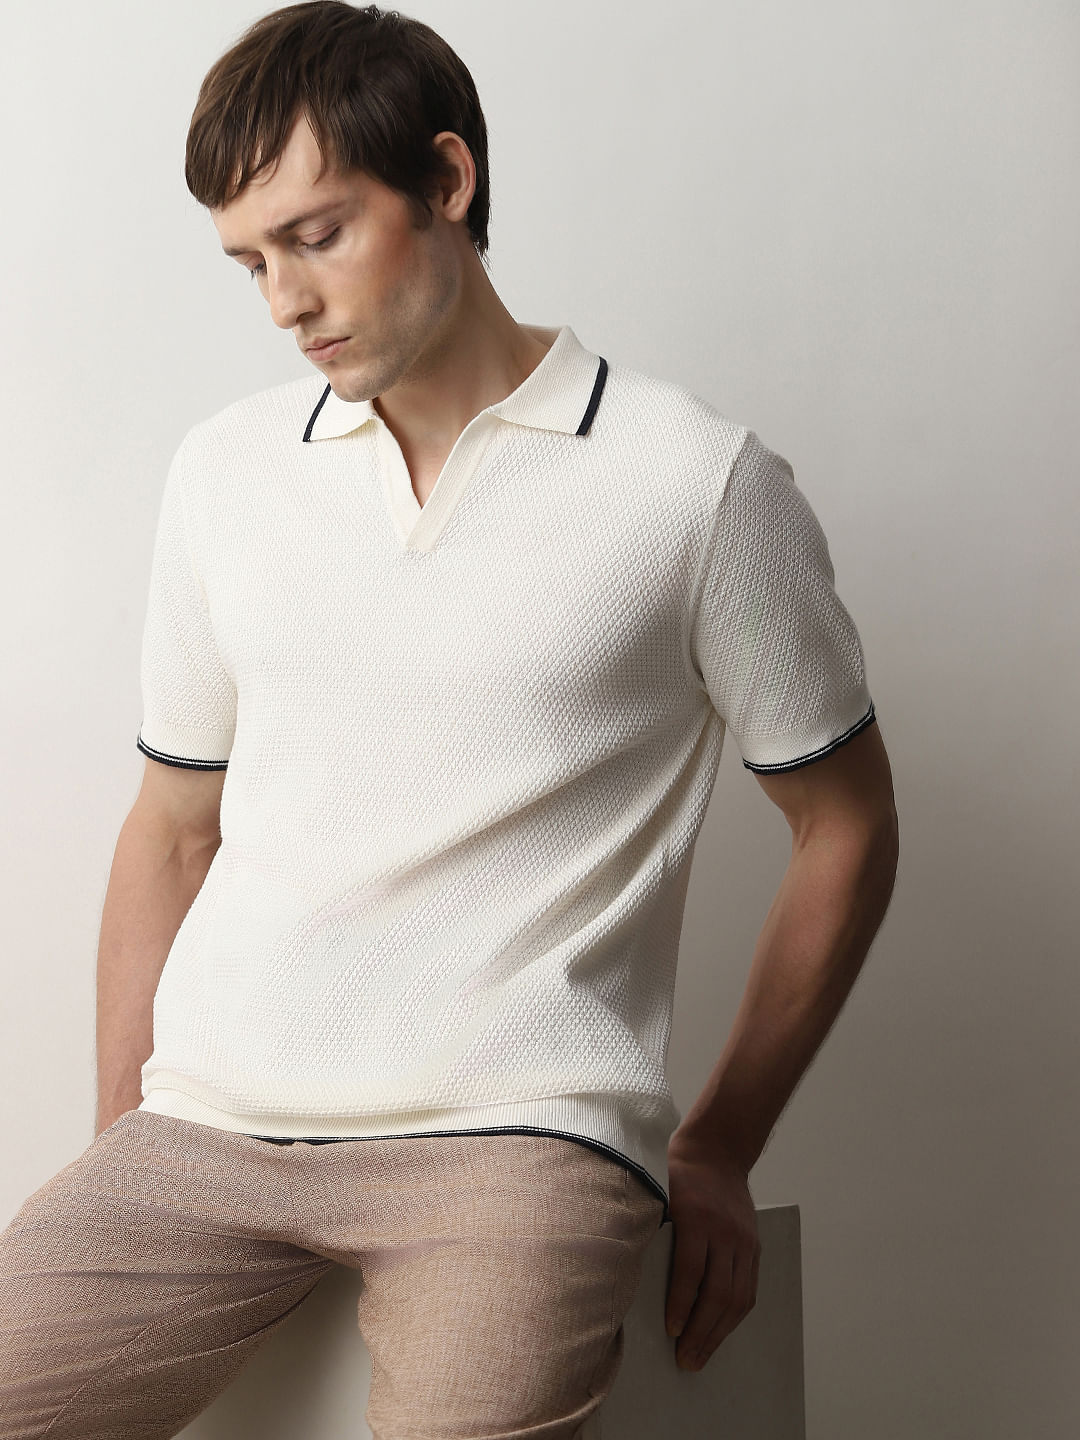 Buy Men's Off White Loose Comfort Fit Cargo Pants Online at Bewakoof